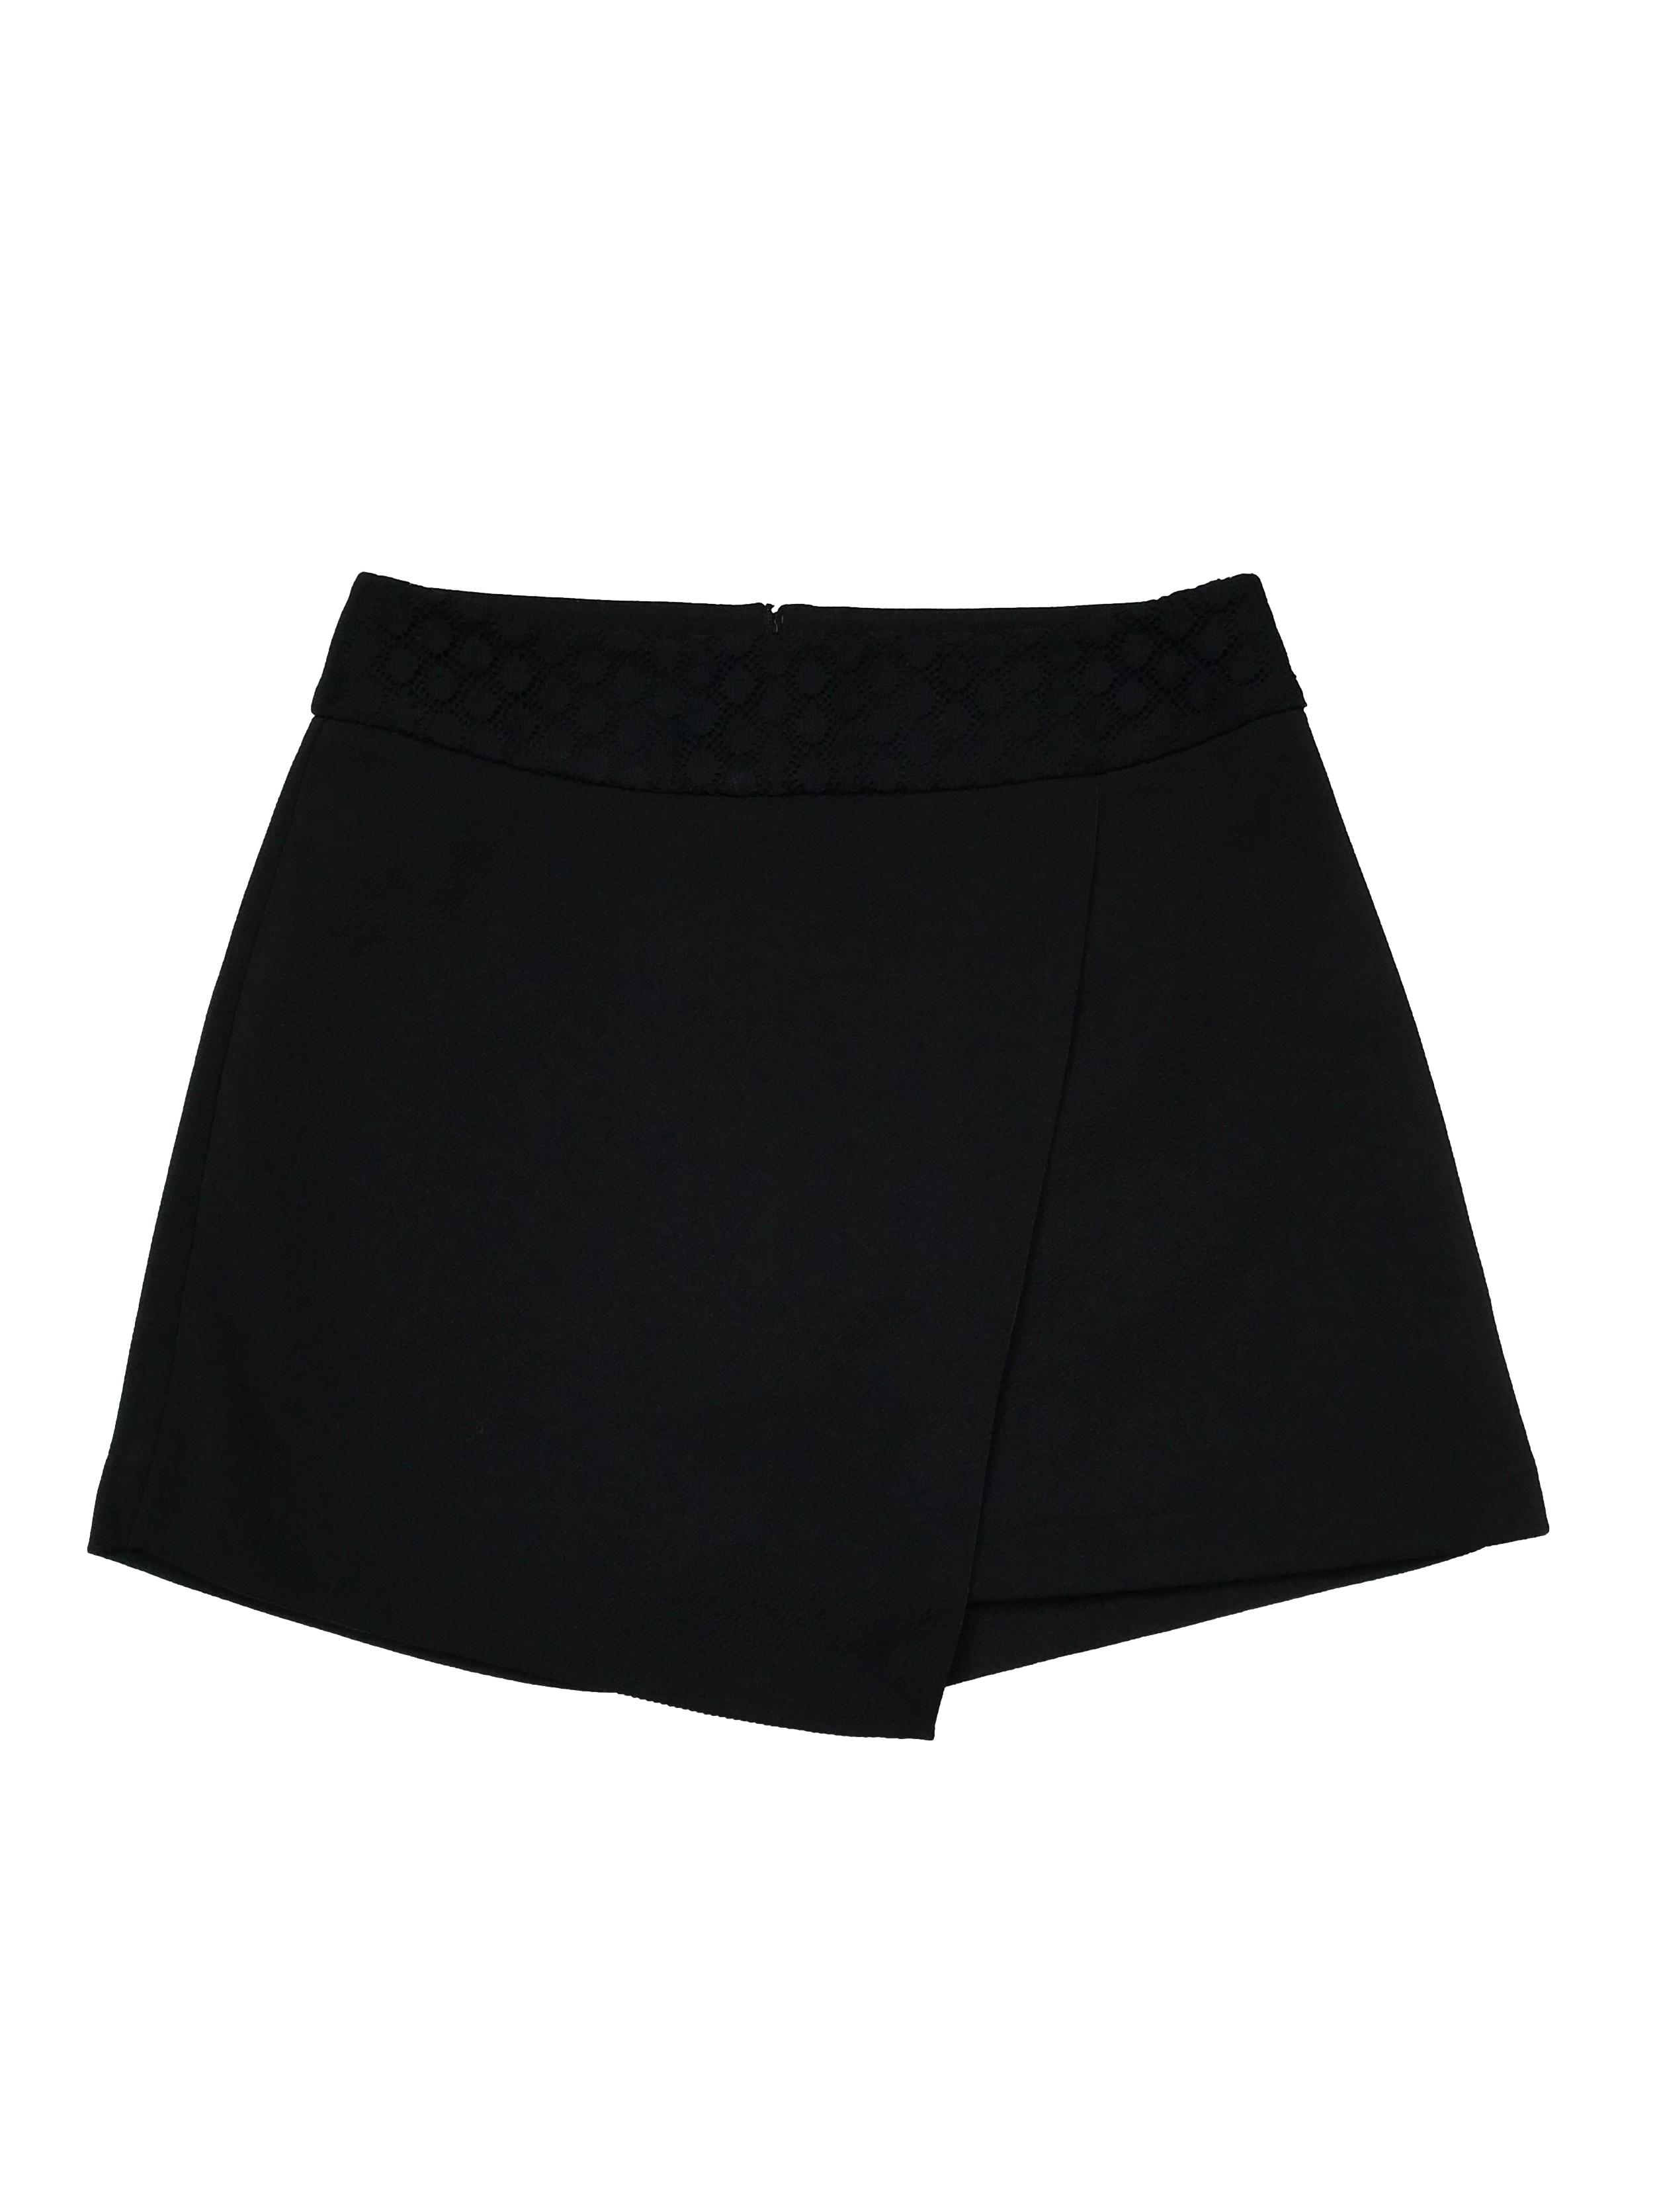 Falda short a la cintura con pretina forrada de encaje negro. cierre en la parte posterior. Cintura 68cm. Largo 35 cm. 